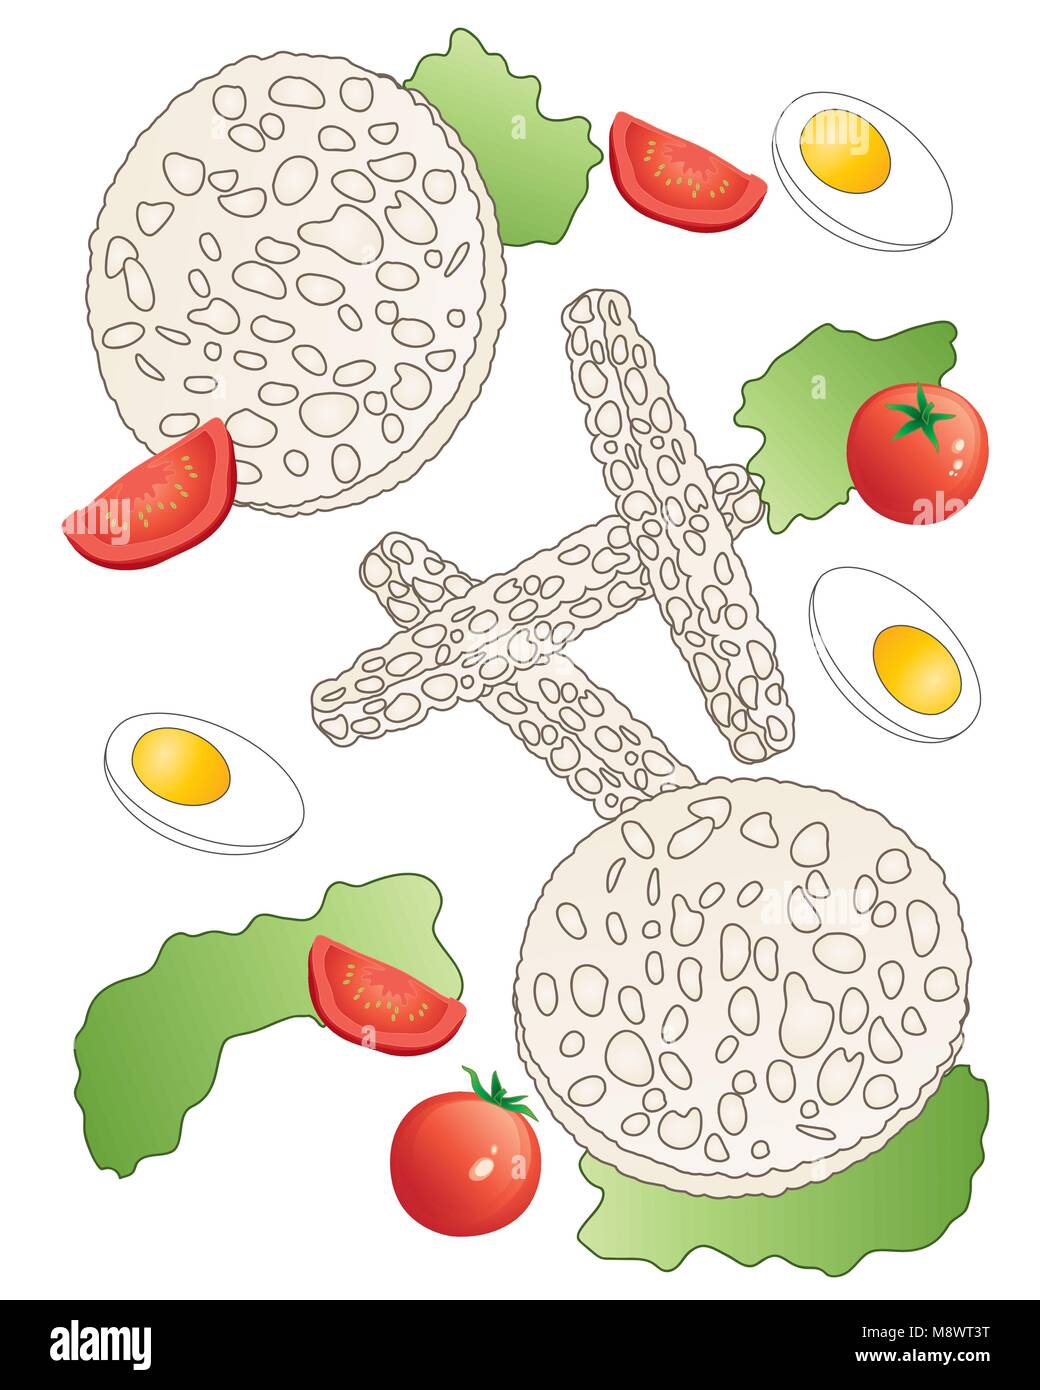 Ein Vektor Abbildung im EPS 10 Format für eine Diät Salat mit Reis kuchen Tomaten Salat und gekochtes Ei auf weißem Hintergrund Stock Vektor